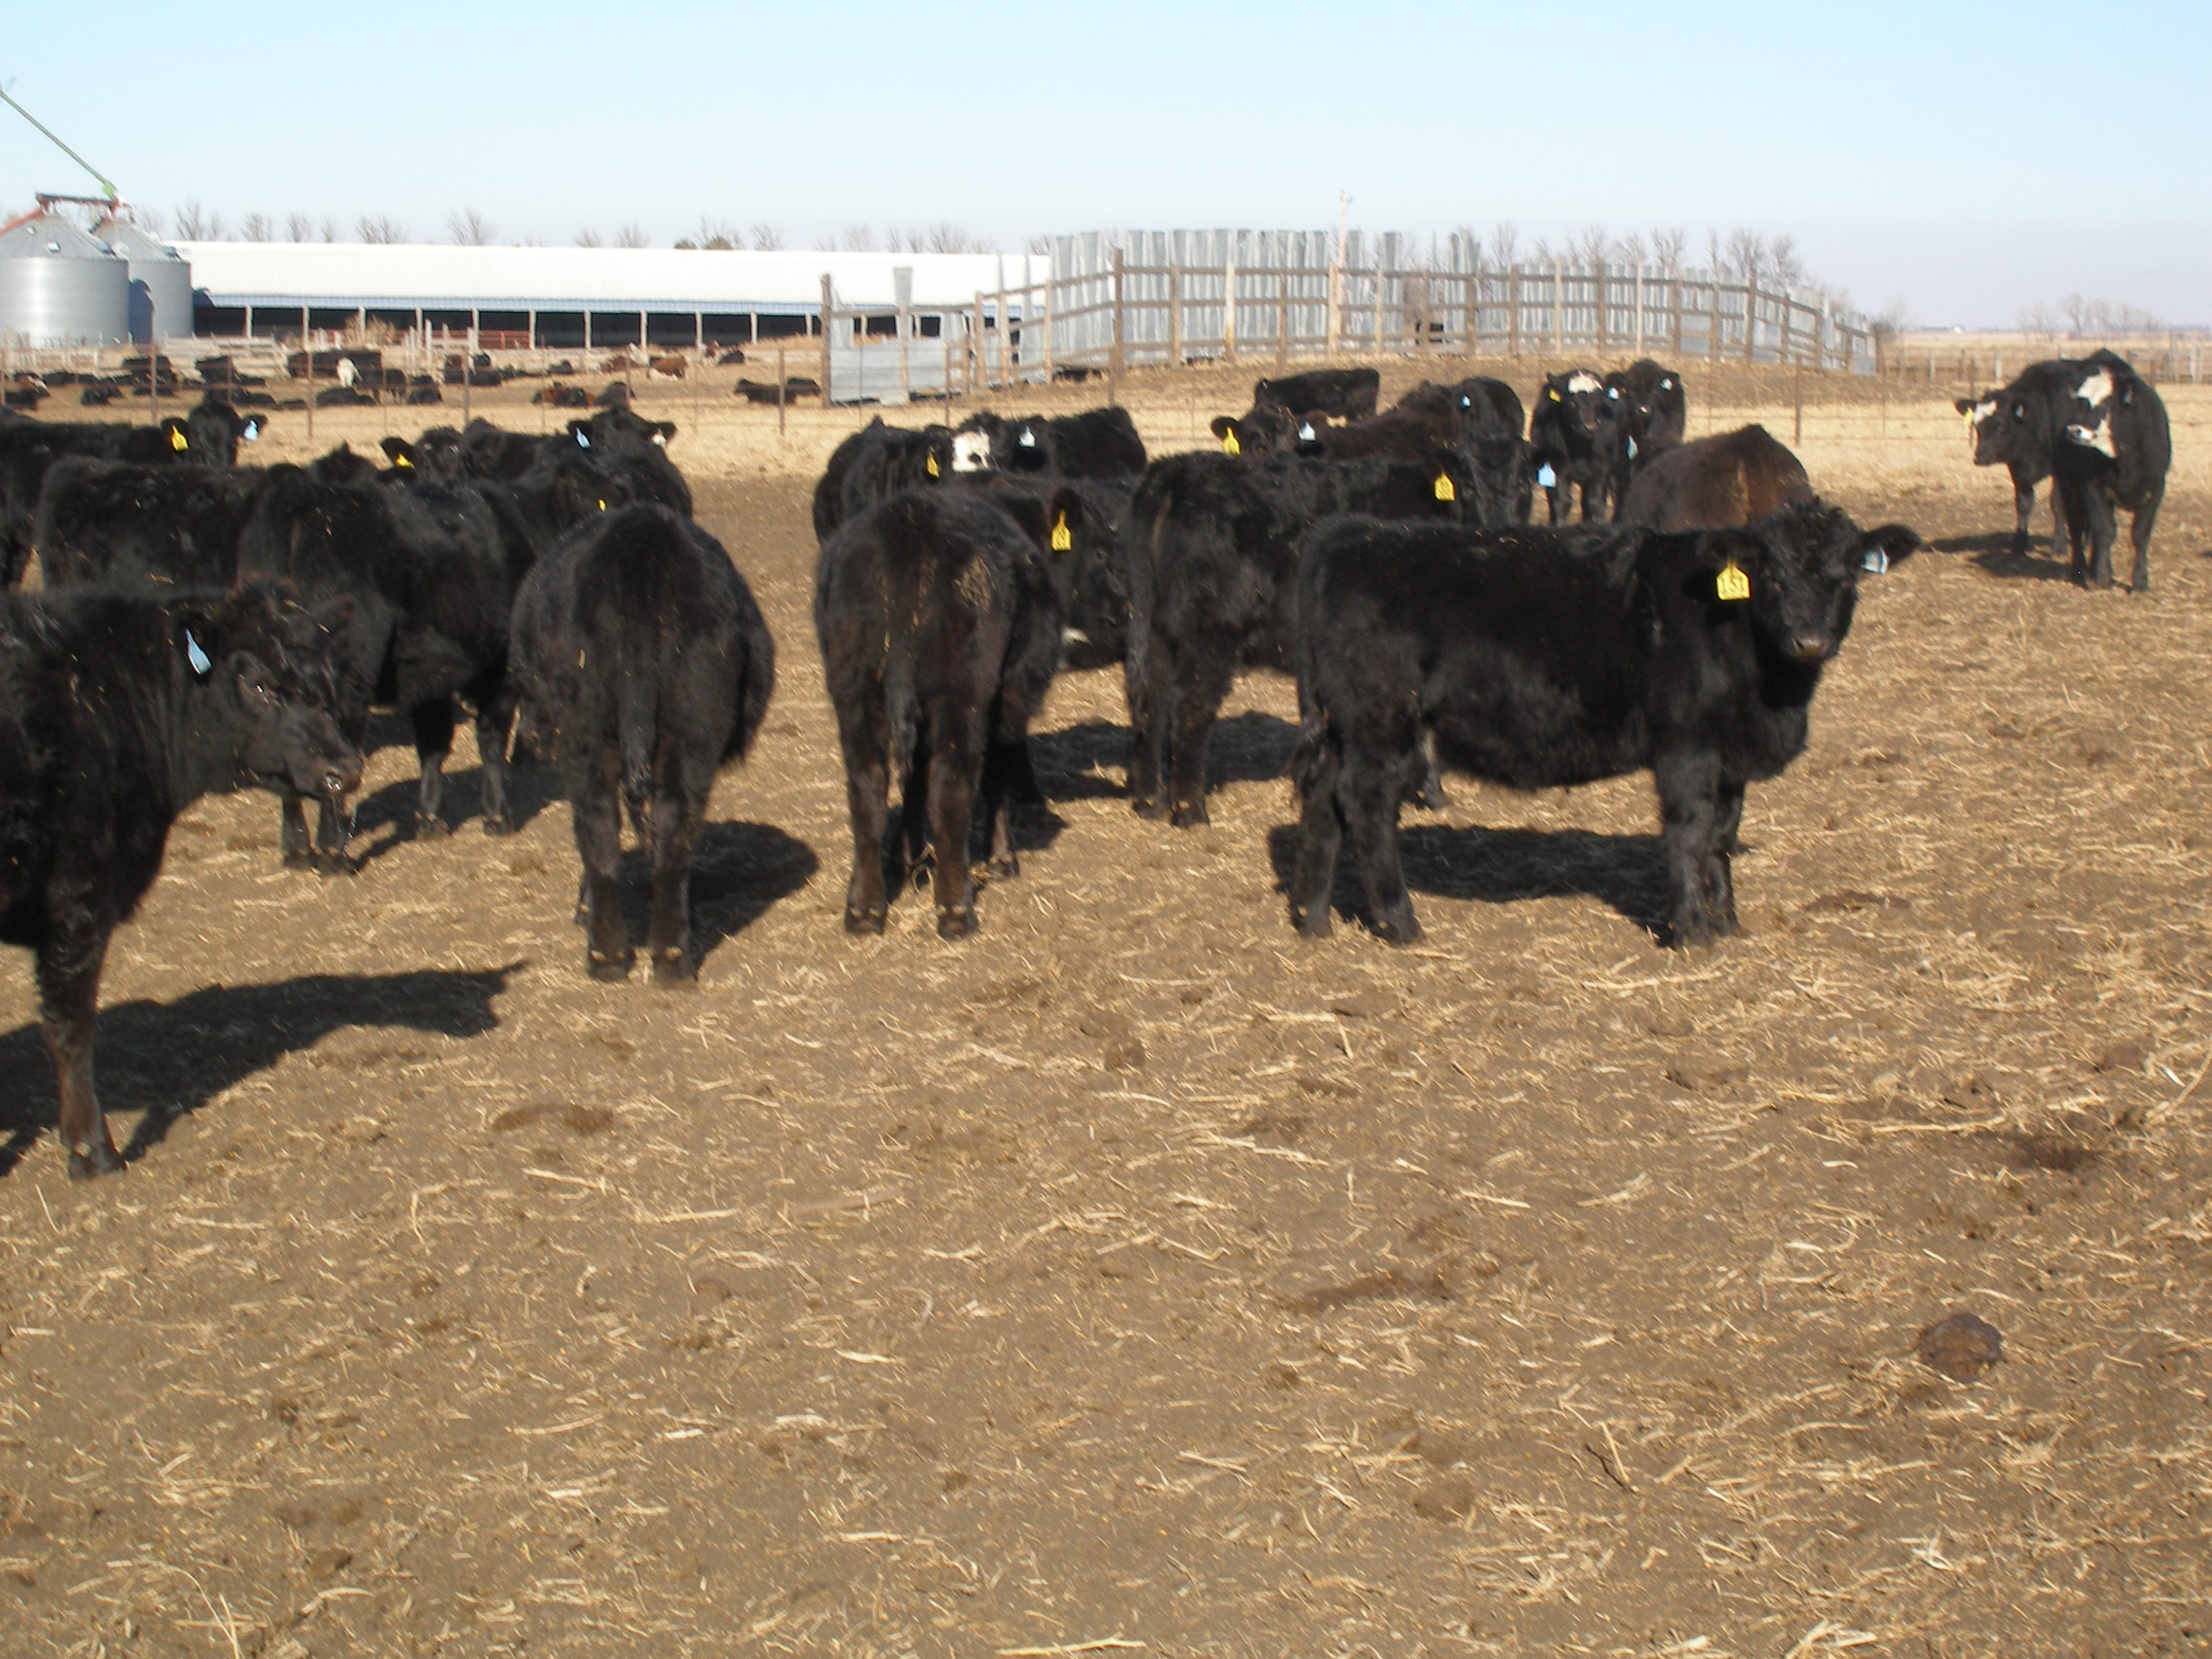 A group of black heifer calves in a feedlot.